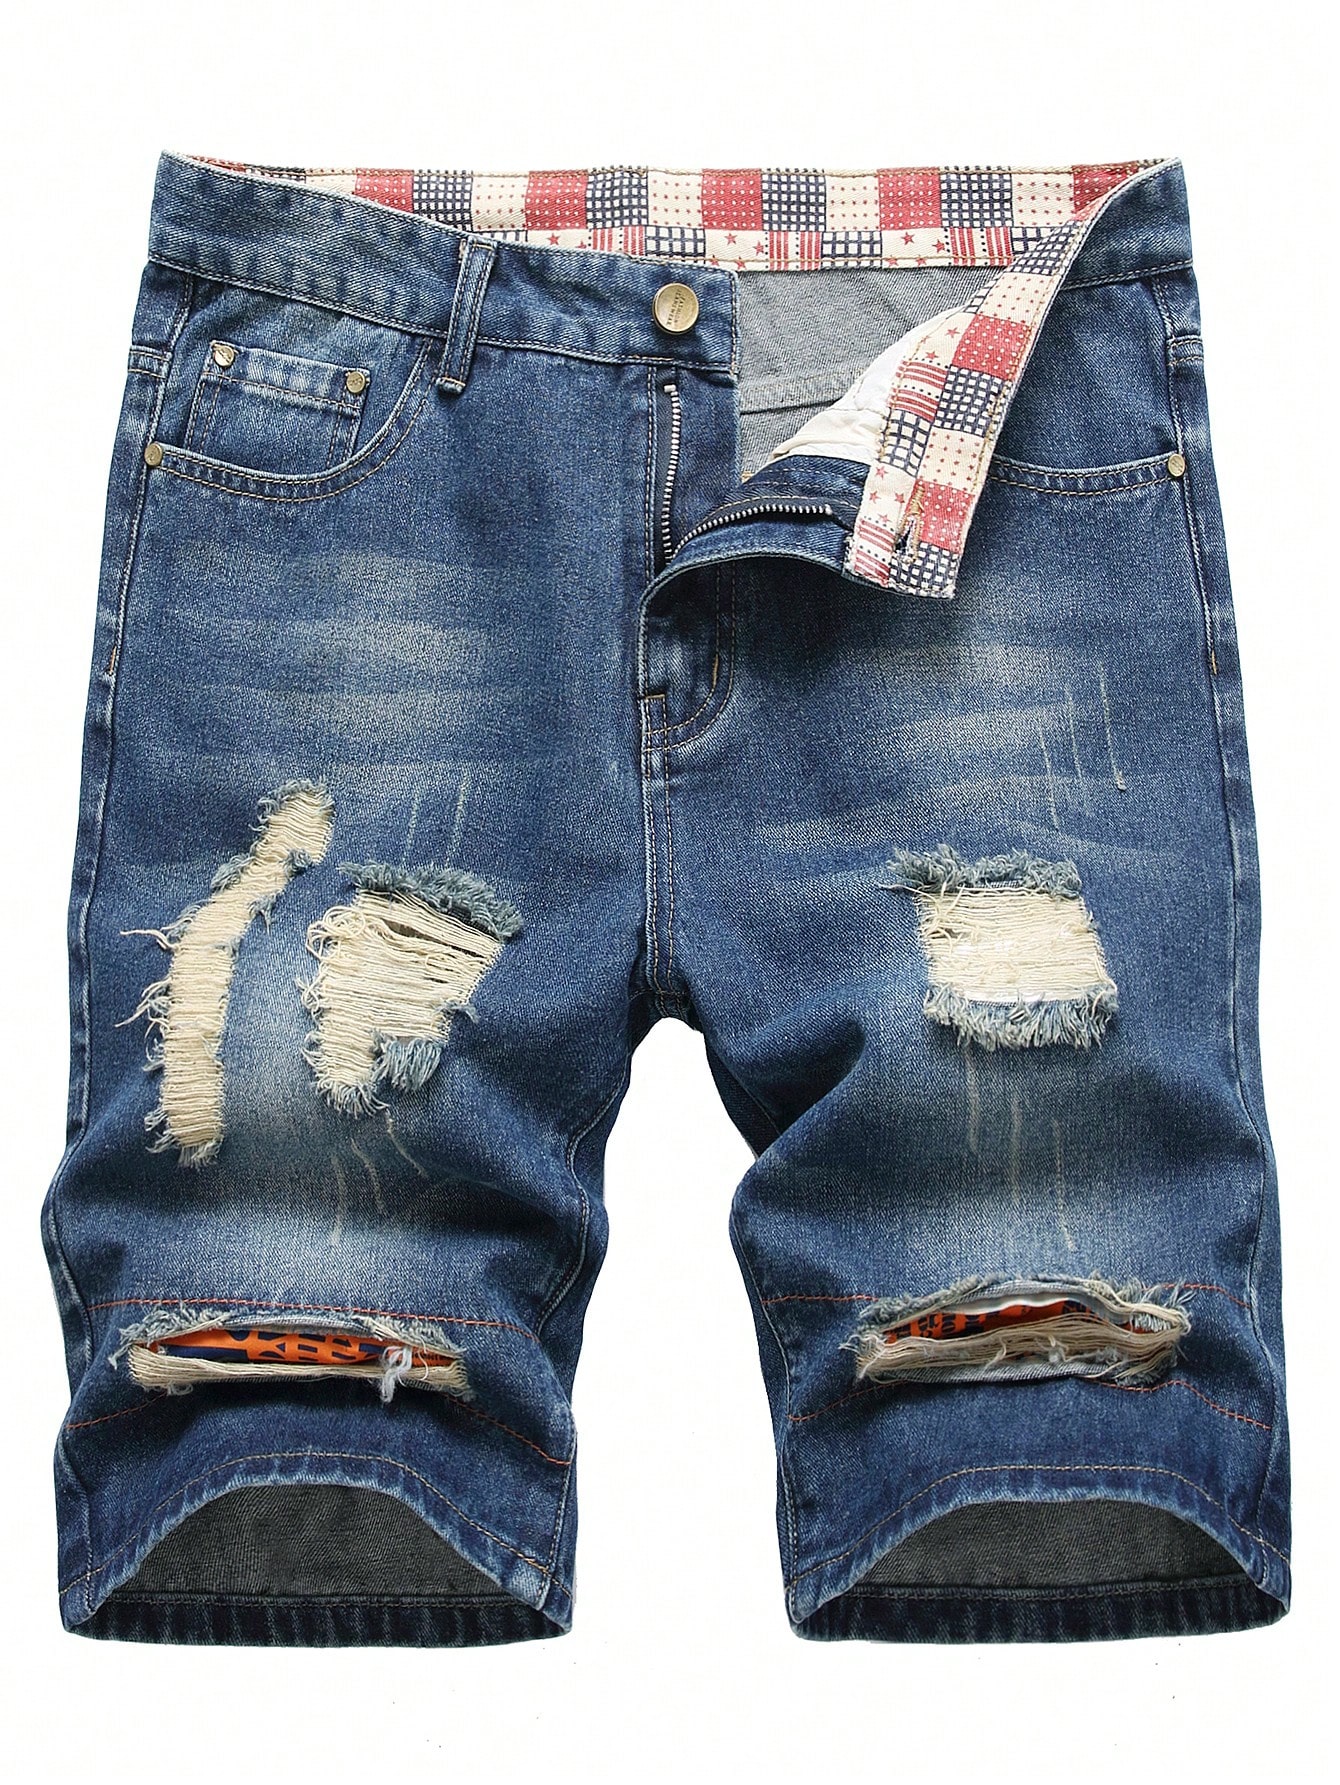 Мужские джинсовые шорты с потертостями и карманами, средняя стирка джинсовые шорты thoshort с эффектом потертостей diesel синий